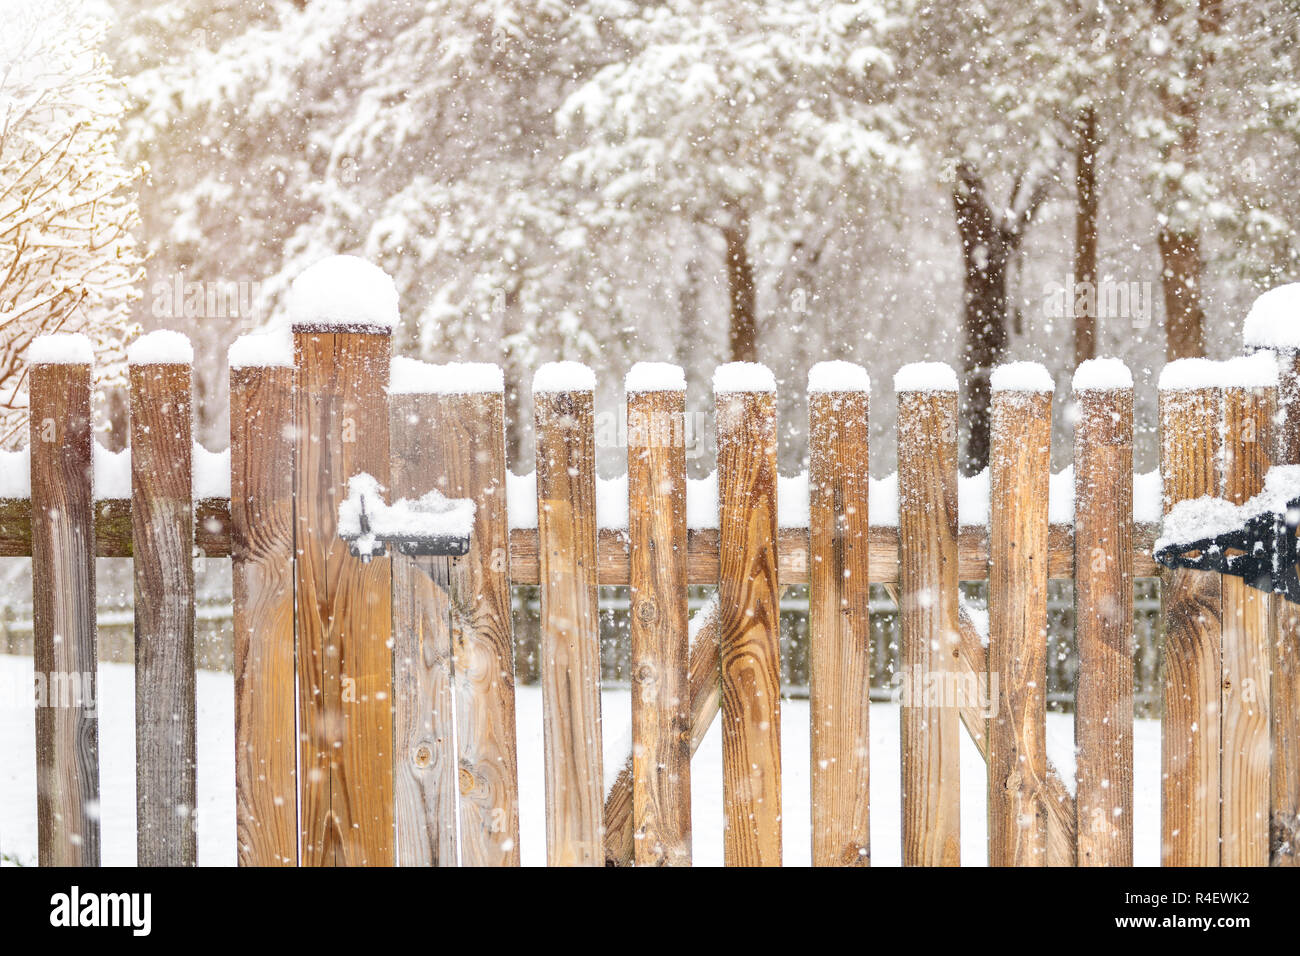 Libre de clôture en bois porte avec loquet de verrouillage, verrouillé couvert de neige blanche à tempête de neige lourde, tempête, chute de flocons par House, maison avec f Banque D'Images